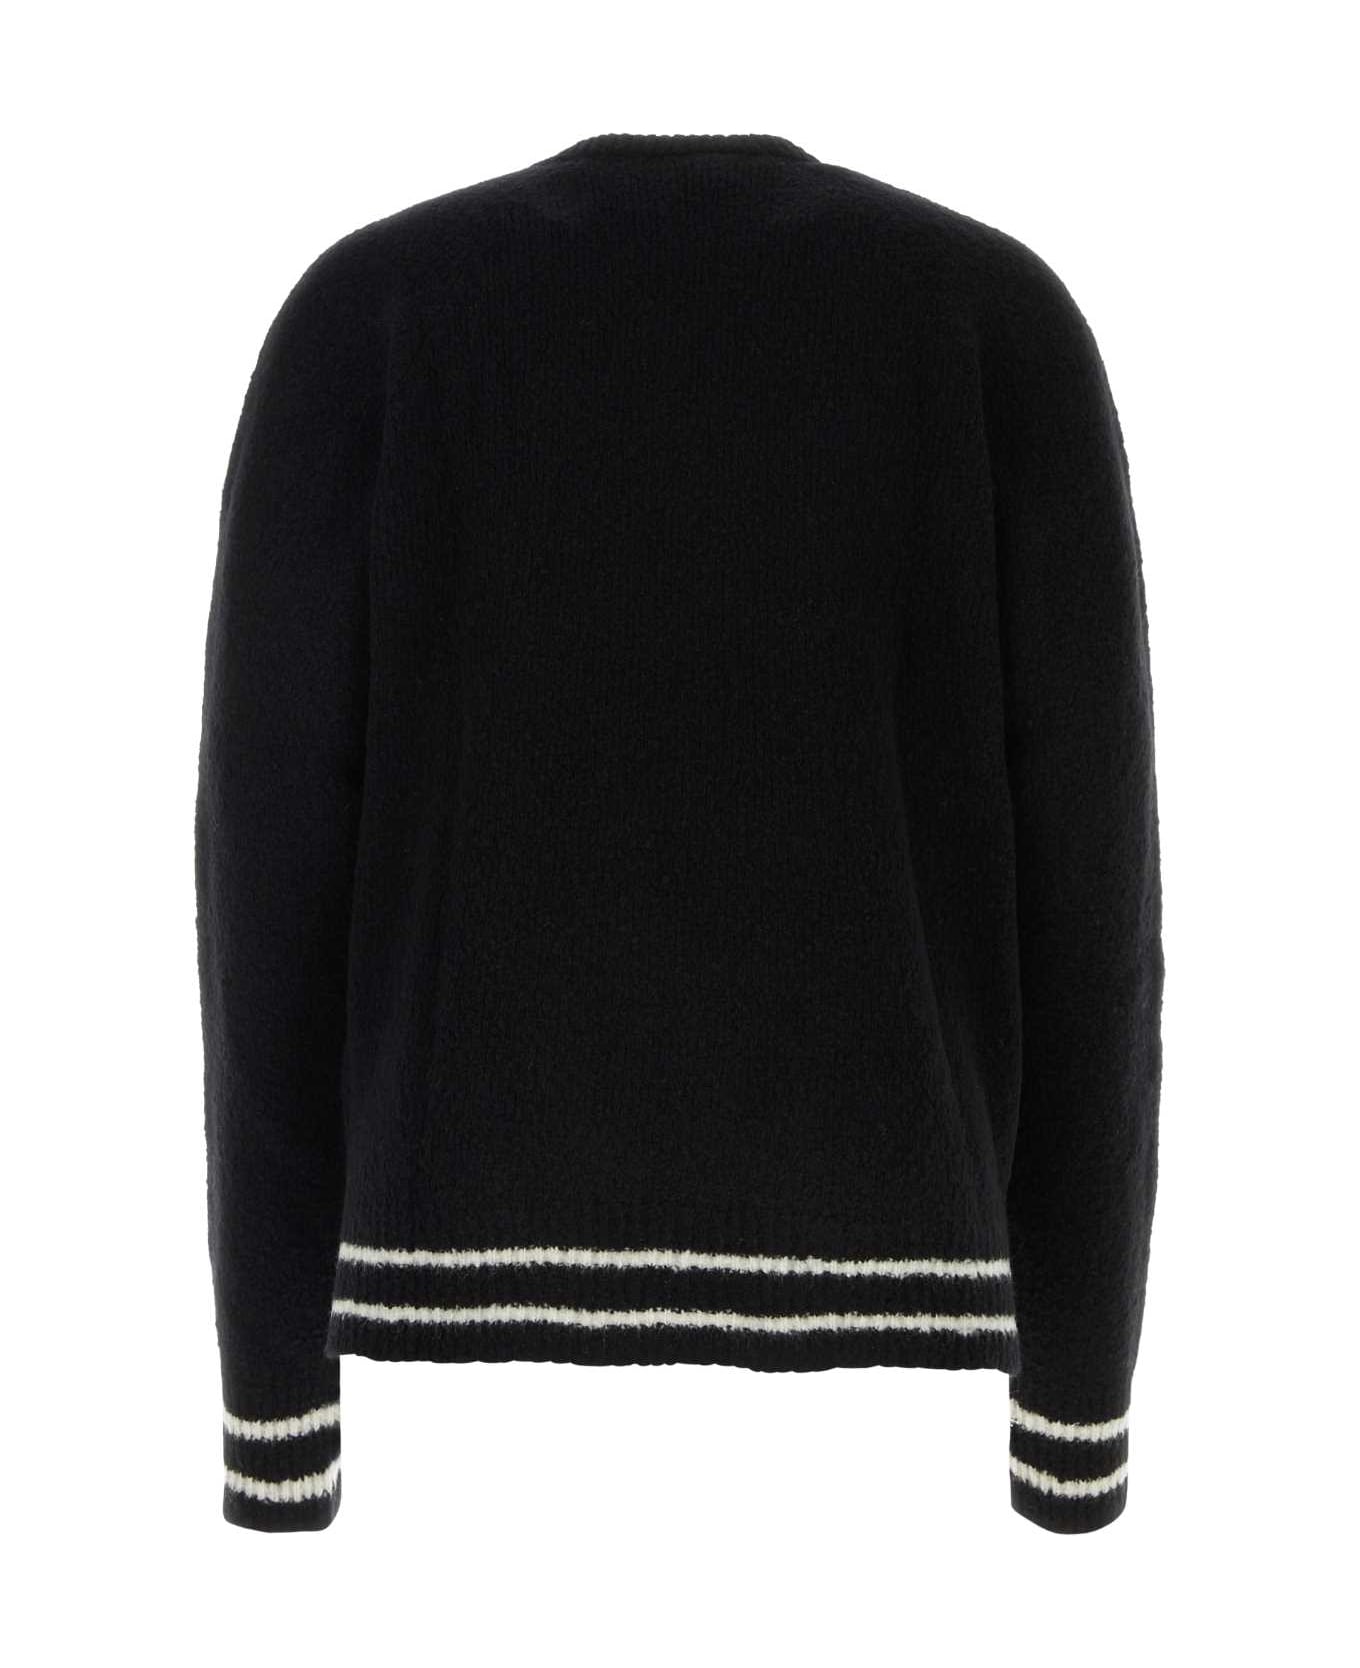 Balmain Wool Blend Sweater - 0PANOIR